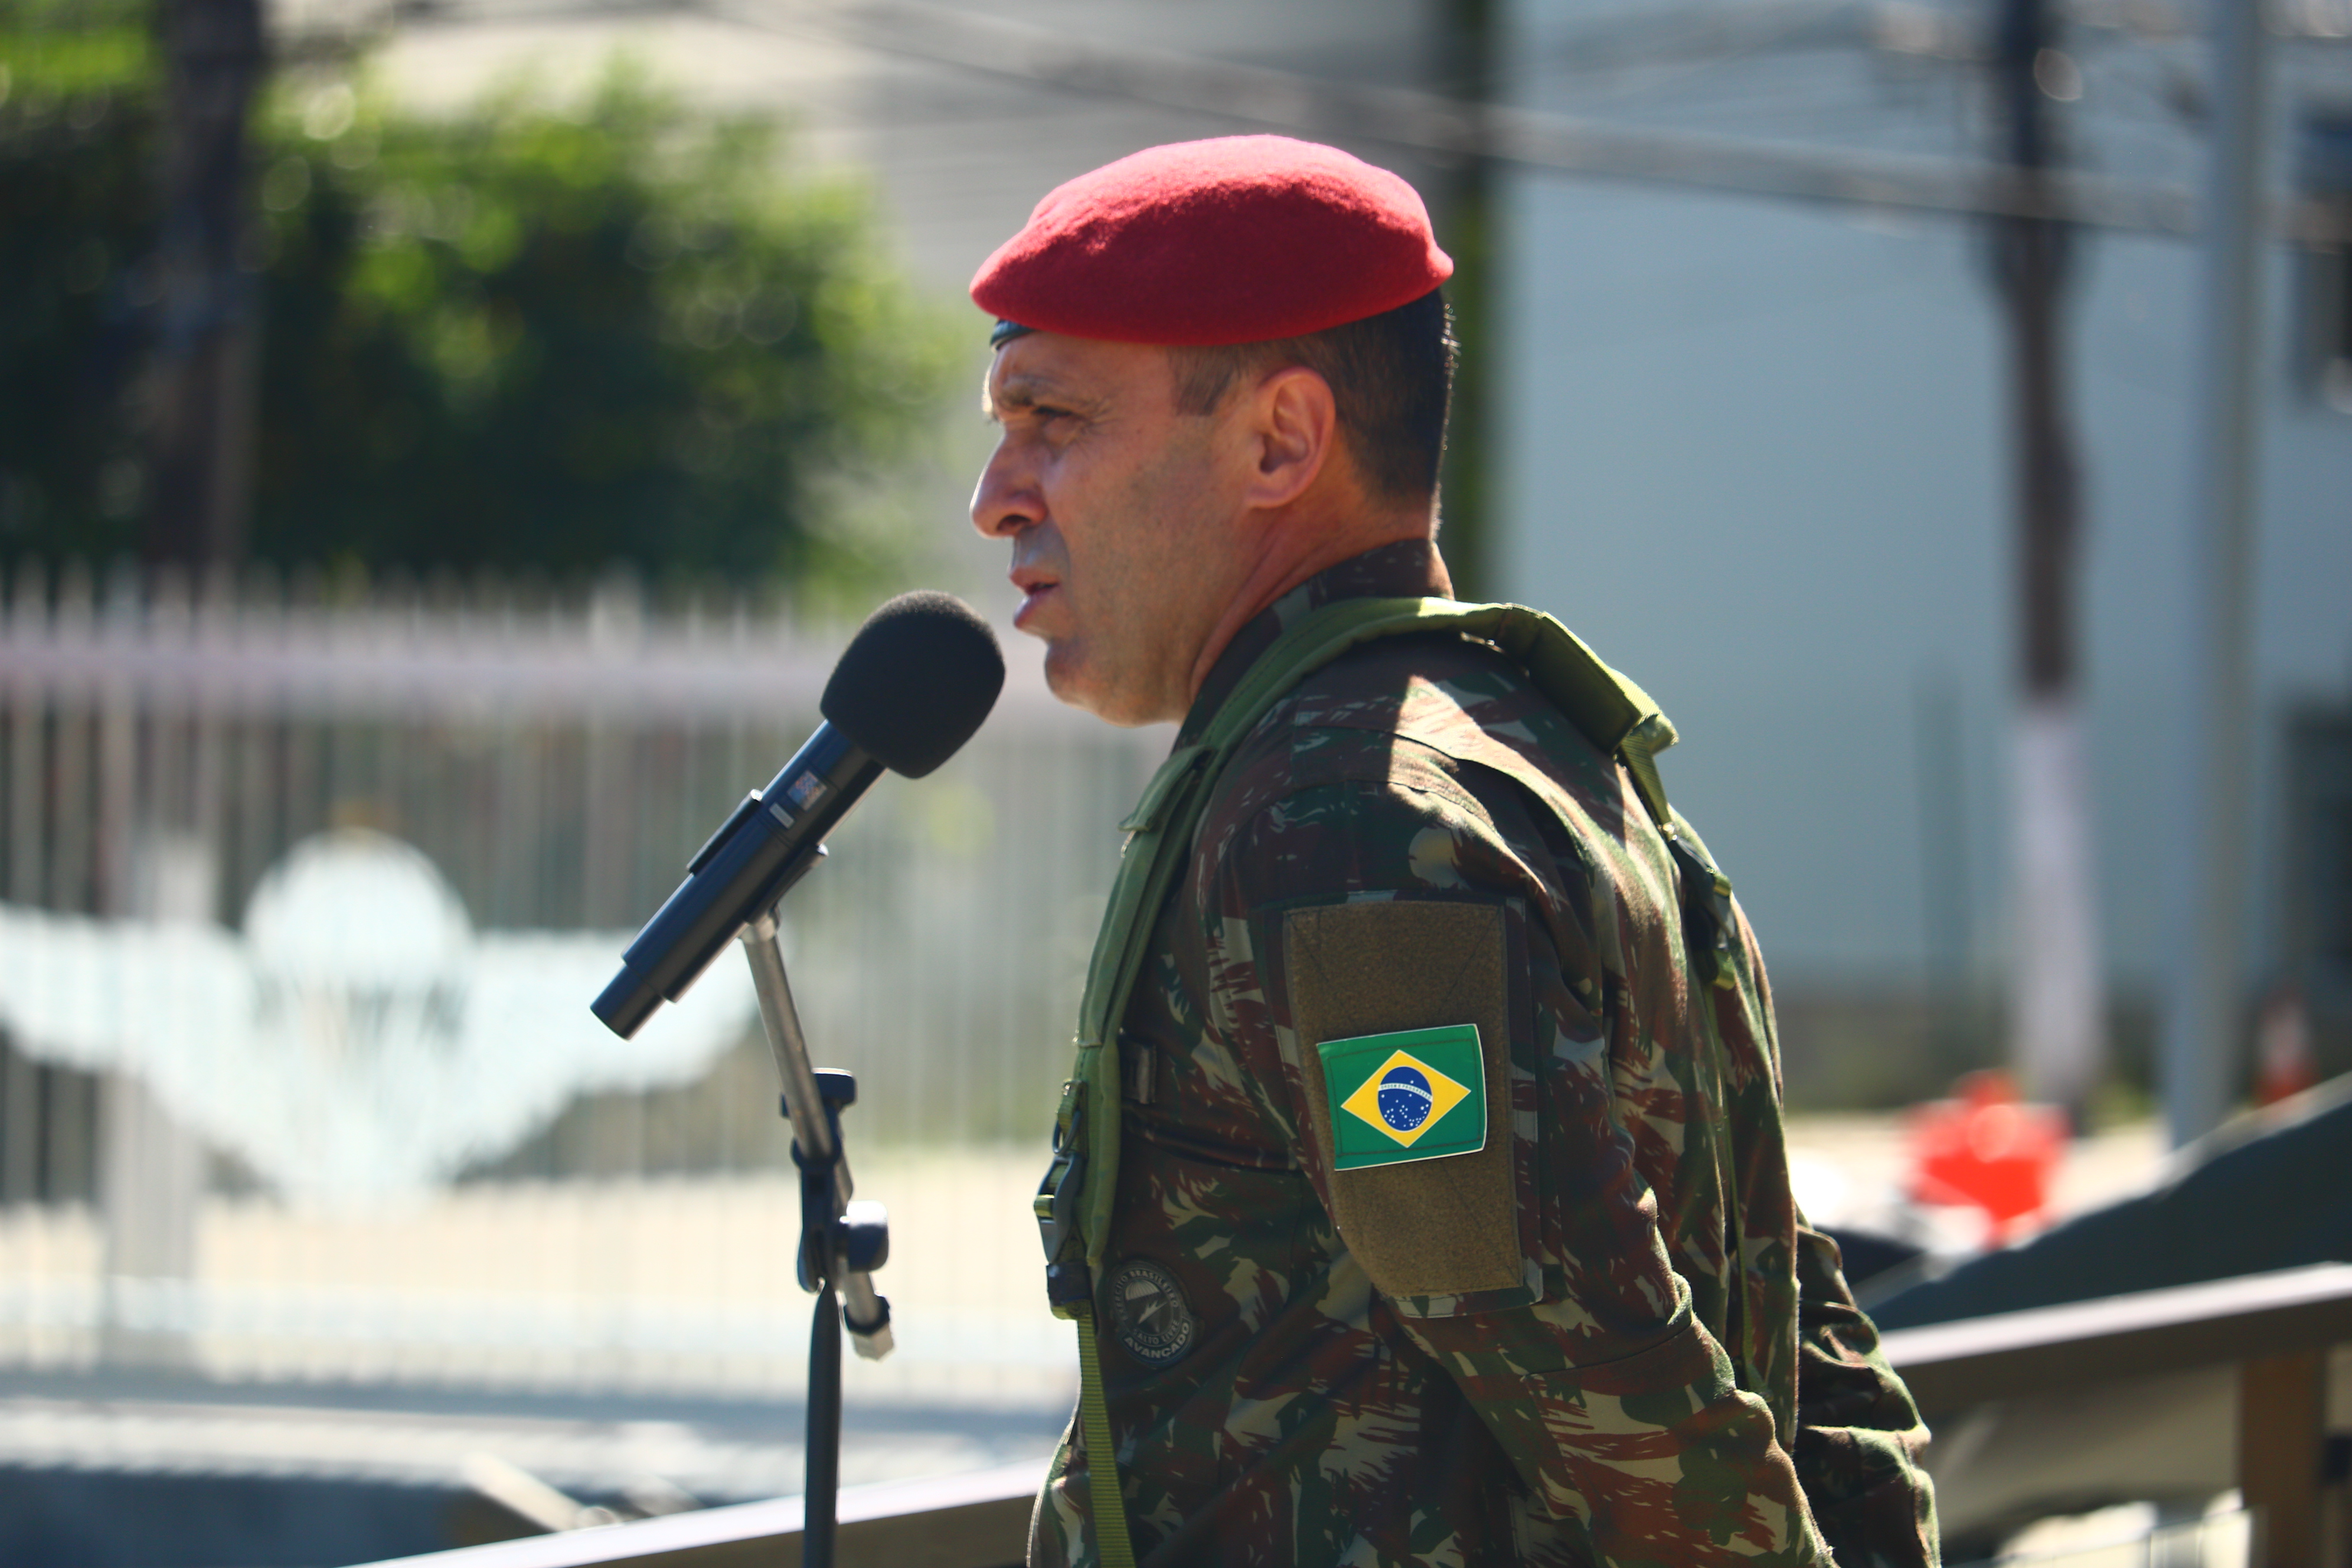 Brigada de Infantaria Pára-quedista realiza formatura em celebração ao Dia do Exército